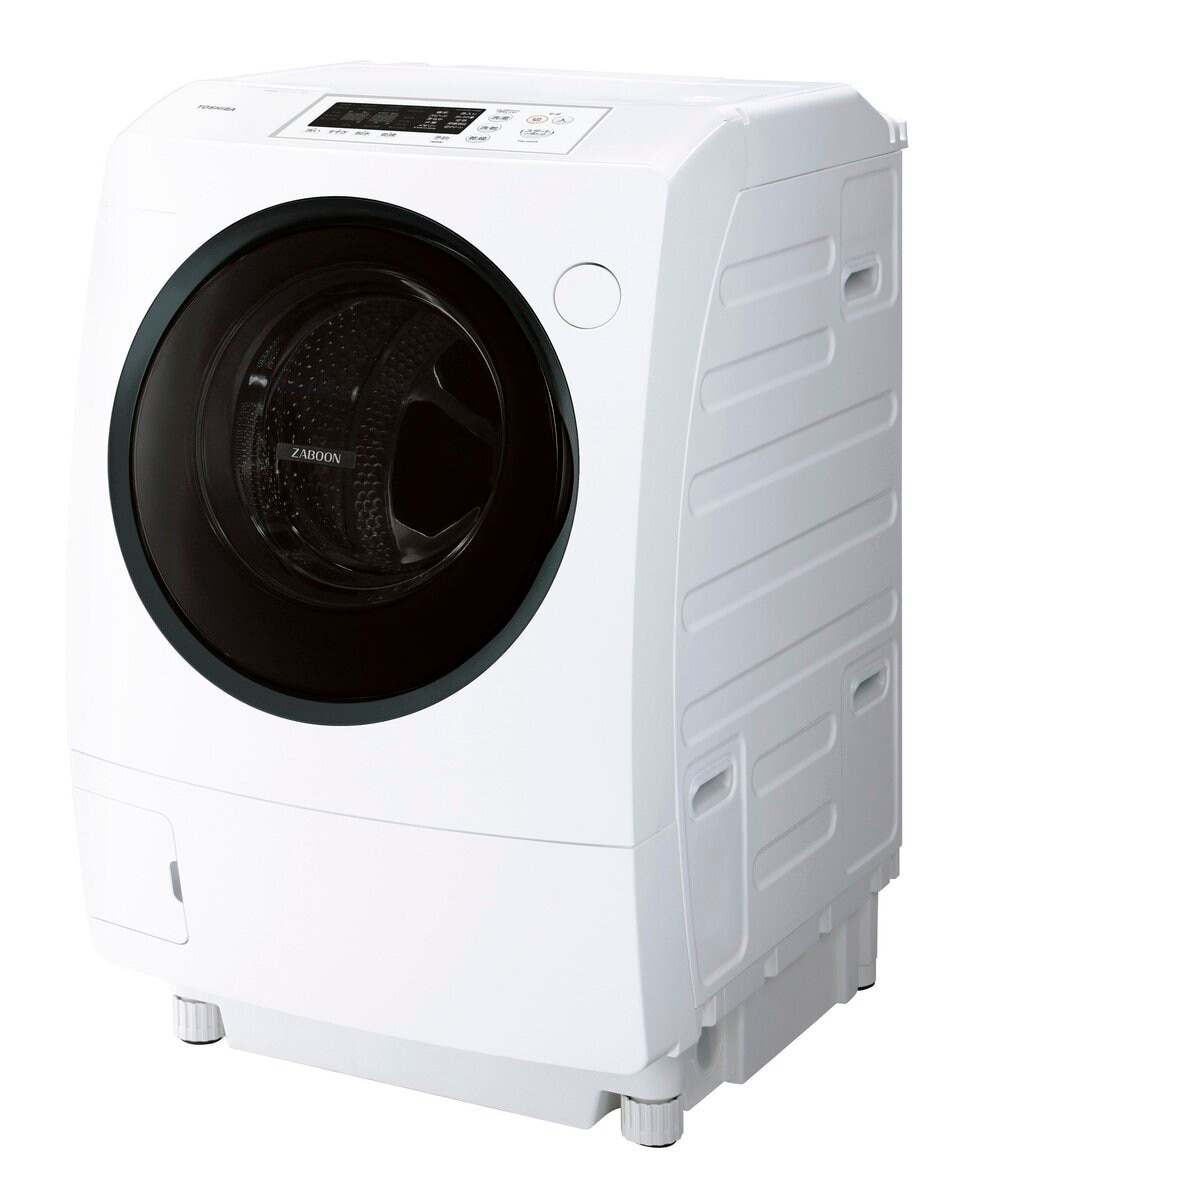 345C ドラム式洗濯機 容量9kg 乾燥6kg 東芝 ZABOON 保証込み購入希望の